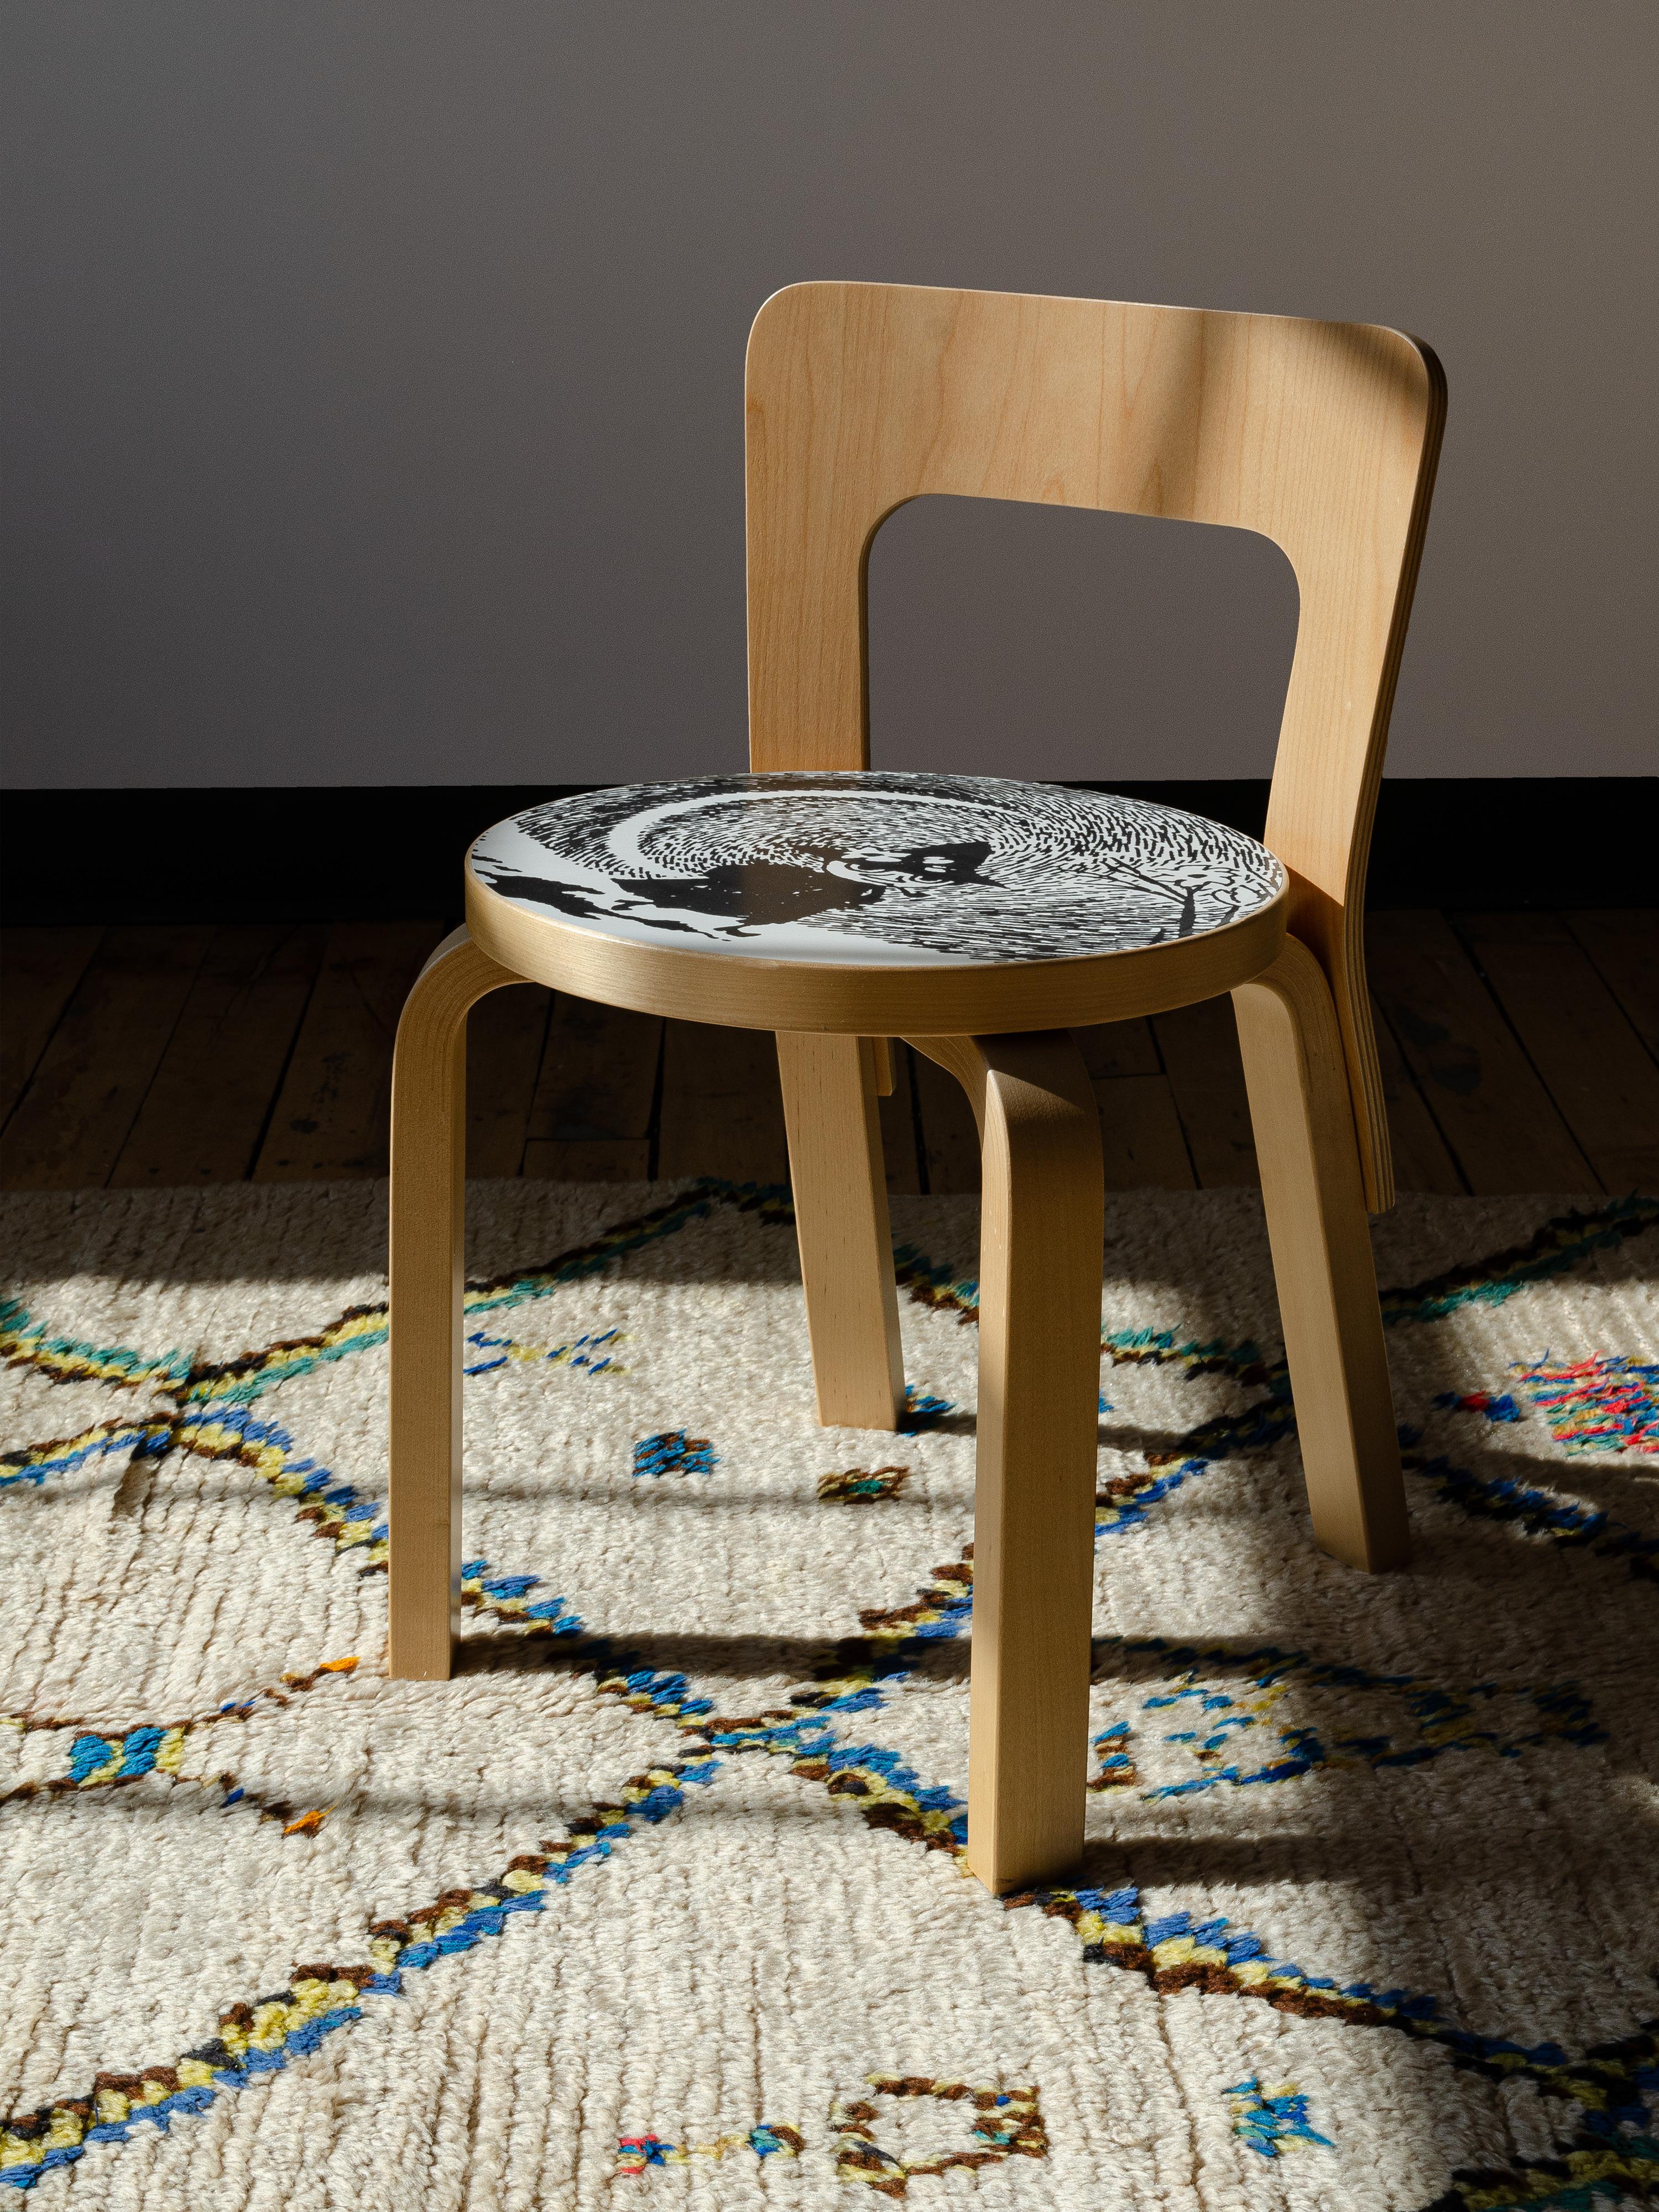 La chaise pour enfants N65 d'Artek est un modèle légèrement redimensionné de la chaise 65 conçue par Alvar Aalto en 1935. En 2013, en l'honneur du 80e anniversaire, Artek a sorti des meubles classiques décorés avec les personnages bien-aimés de